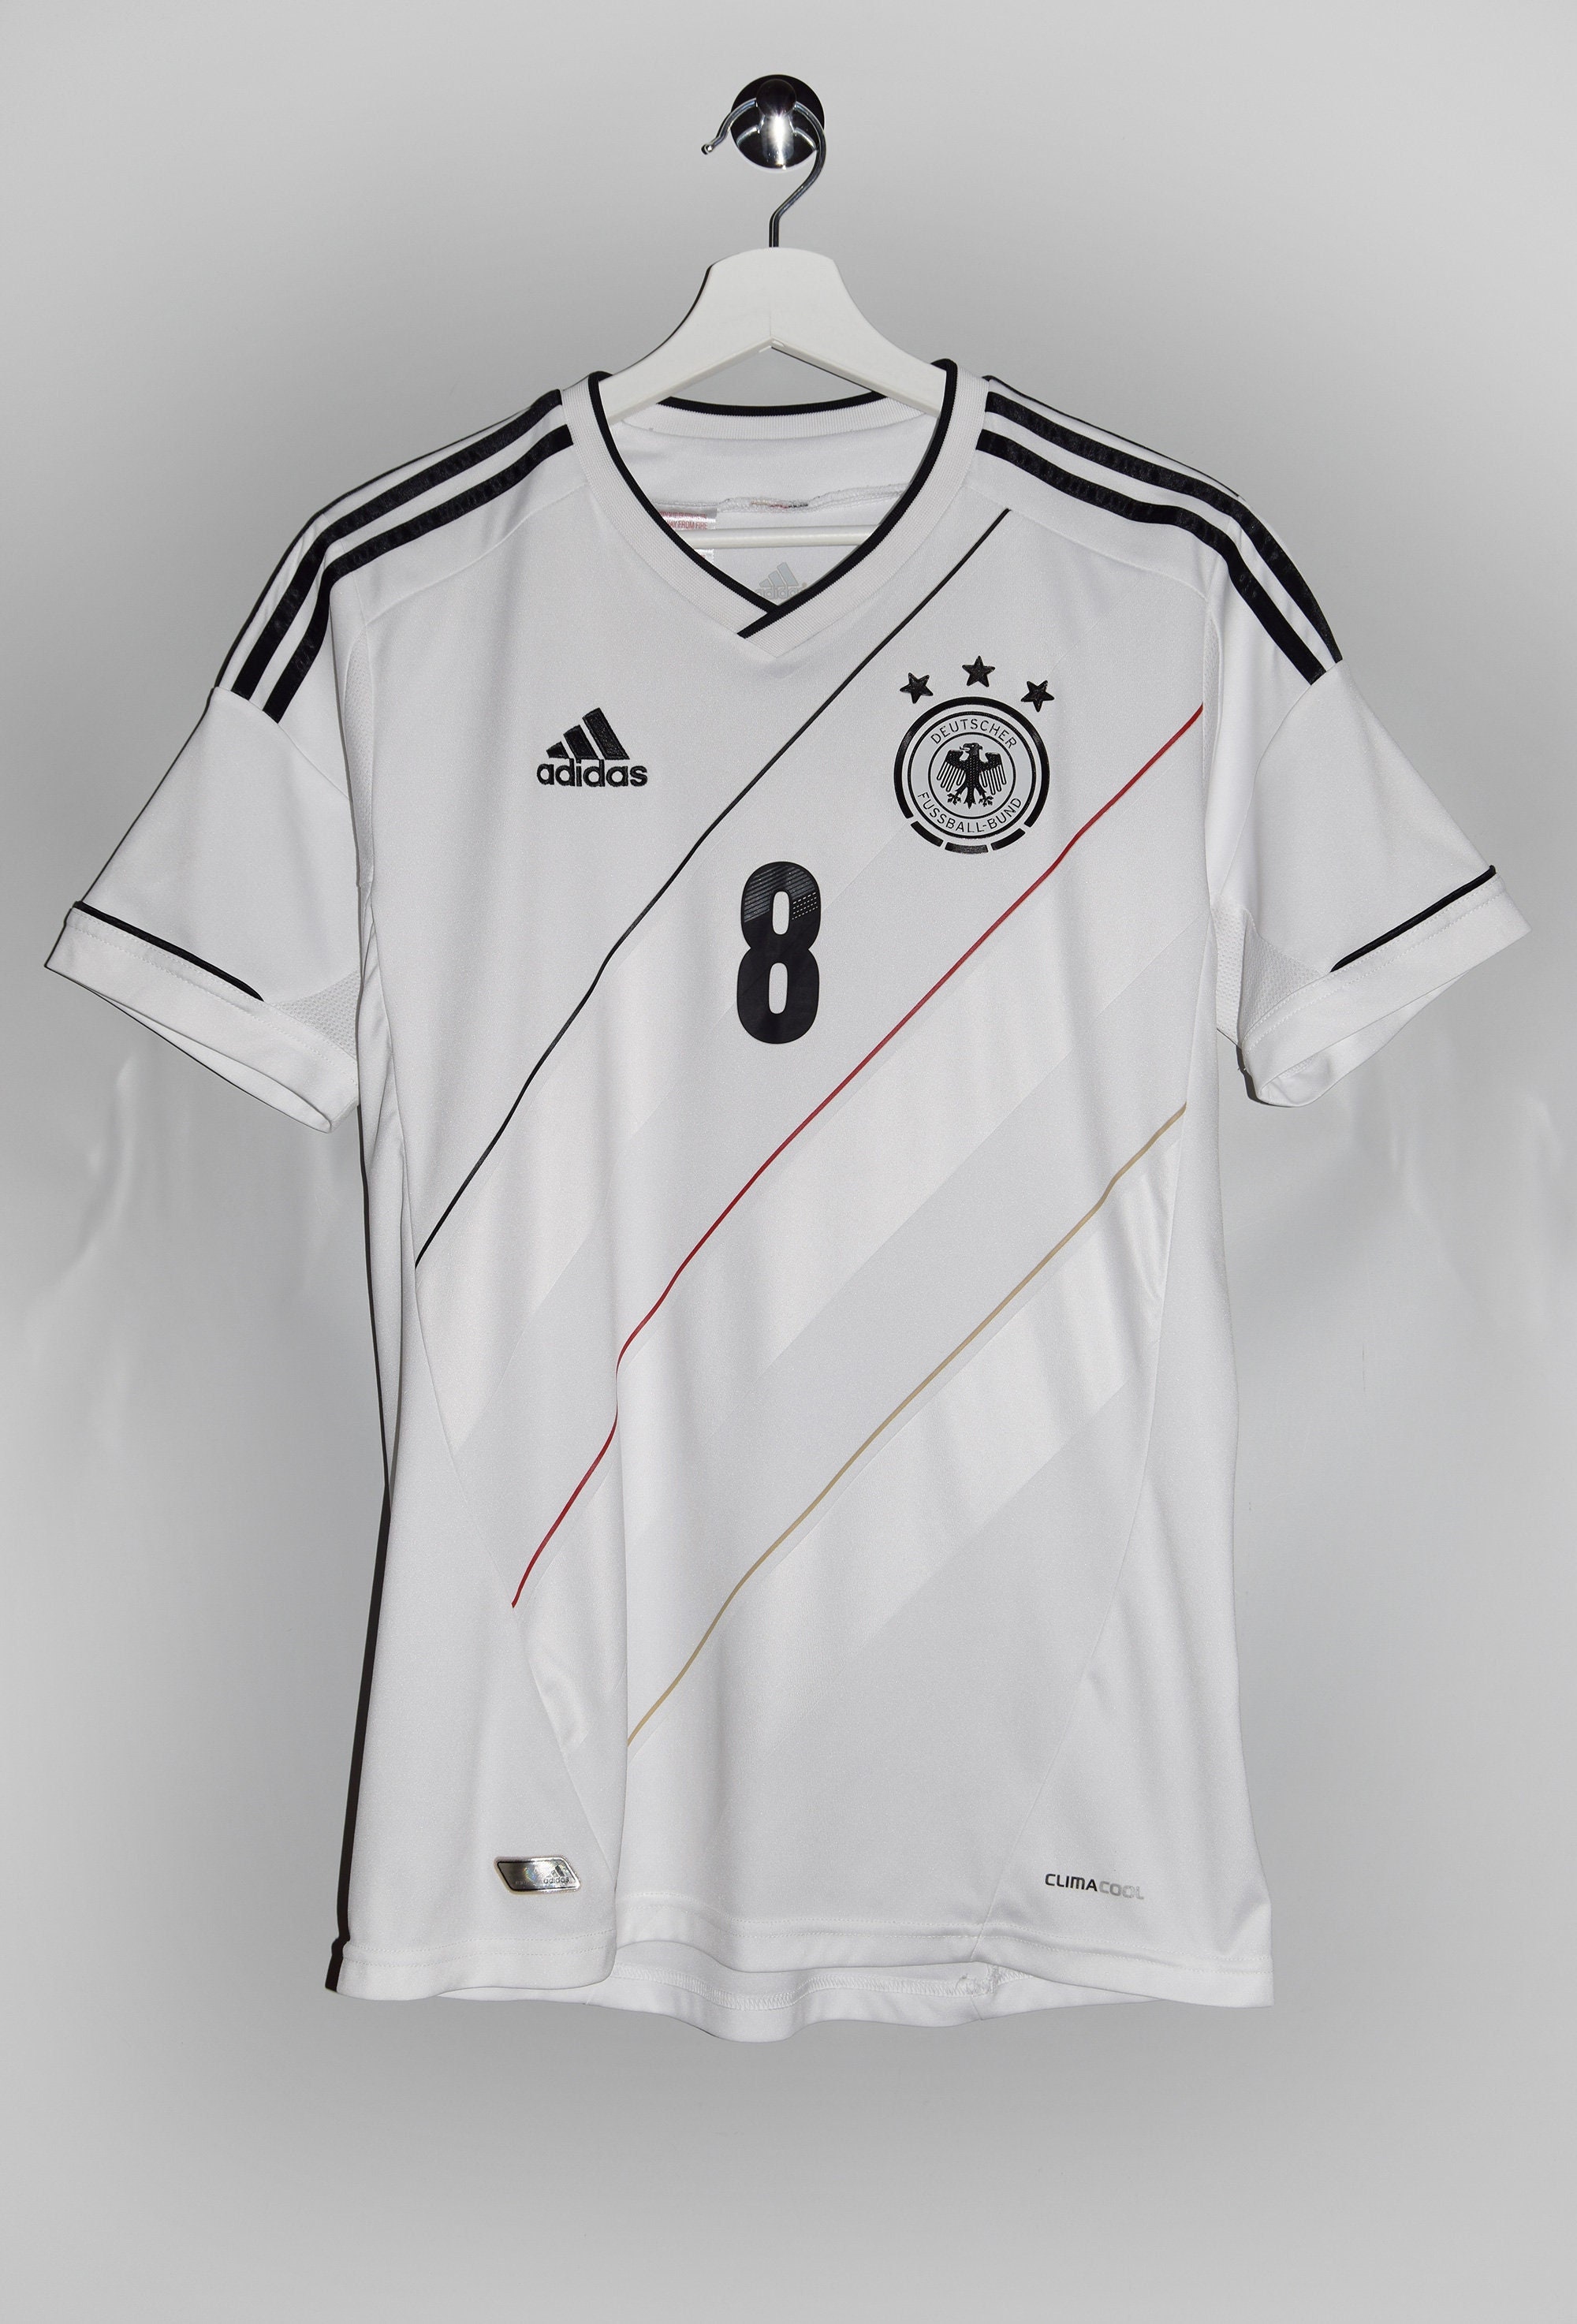 StreetGem Adidas x deutscher Fussball-Bund x Özil 8 Jersey / V-Neck Football T-Shirt / Sportswear / Size Youth XL - Fits Men's S